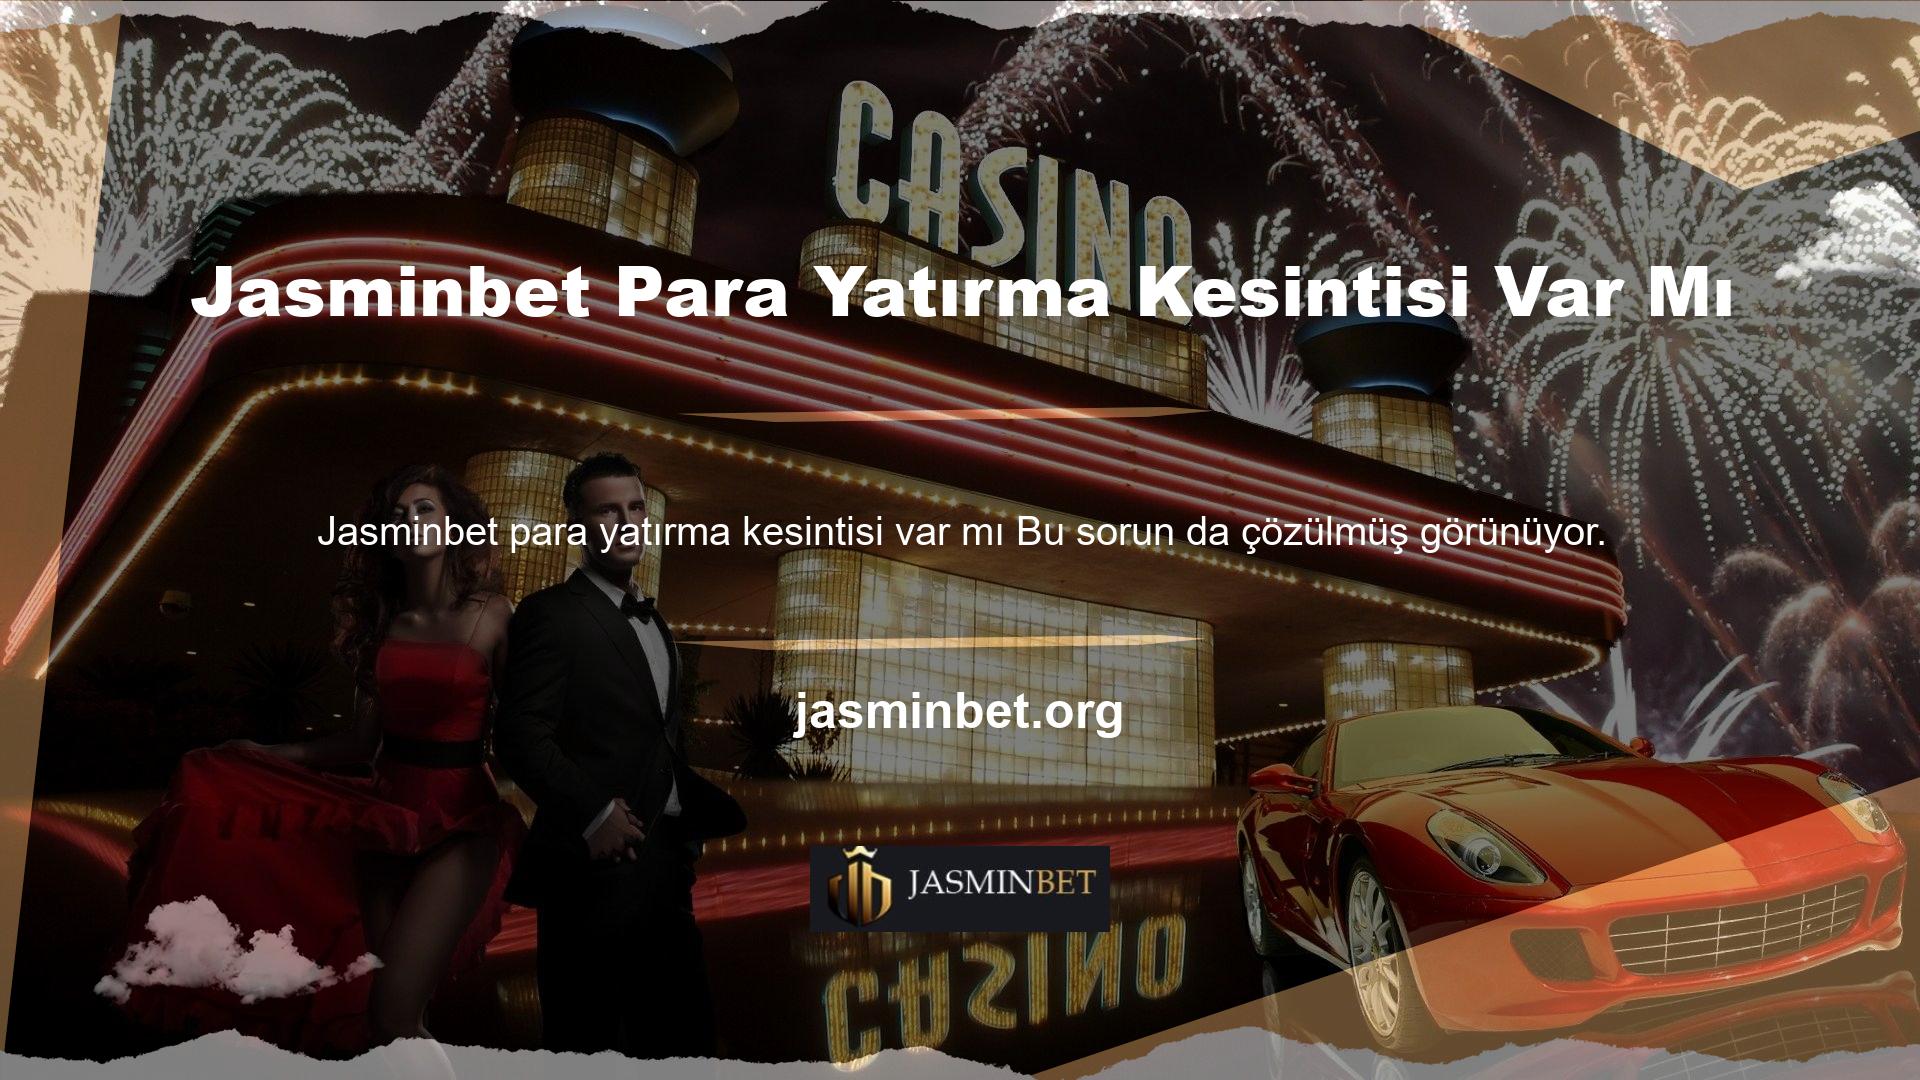 Jasminbet web sitesi yöneticisi, katılımcının hesabına aktarılan fonlardan herhangi bir kesinti yapmaz